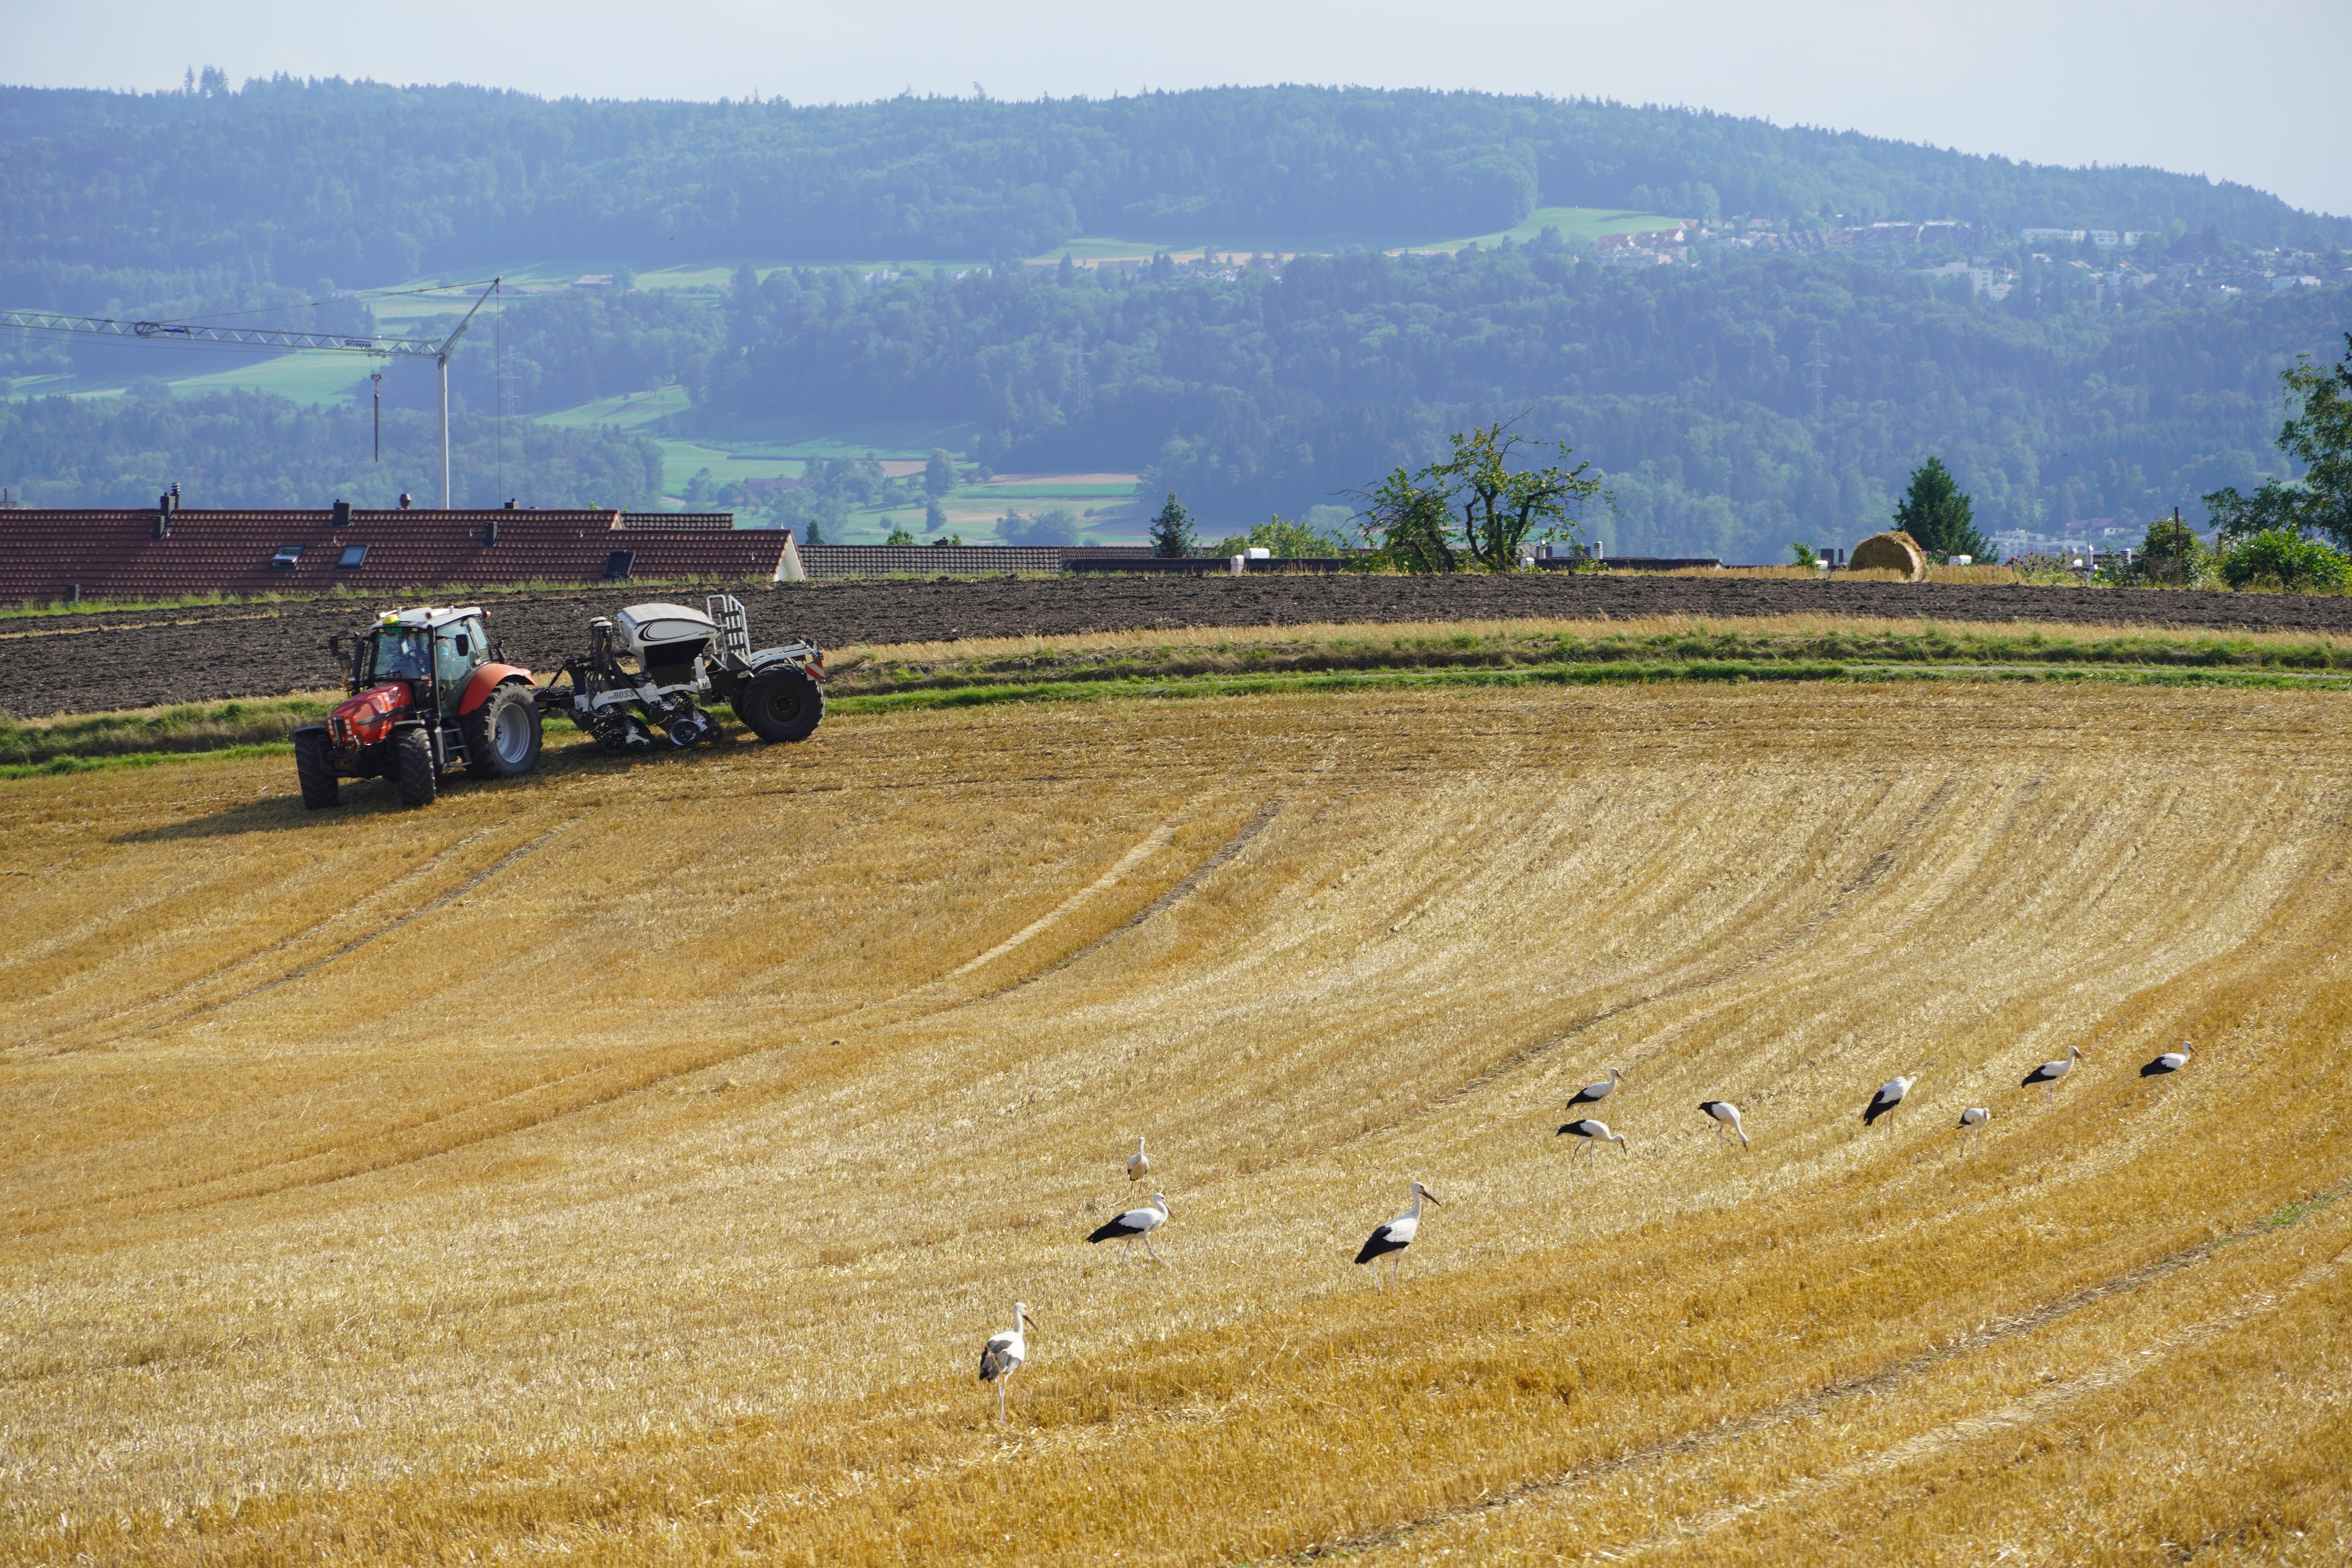 Traktor säht auf Feld, Störche suchen Nahrung